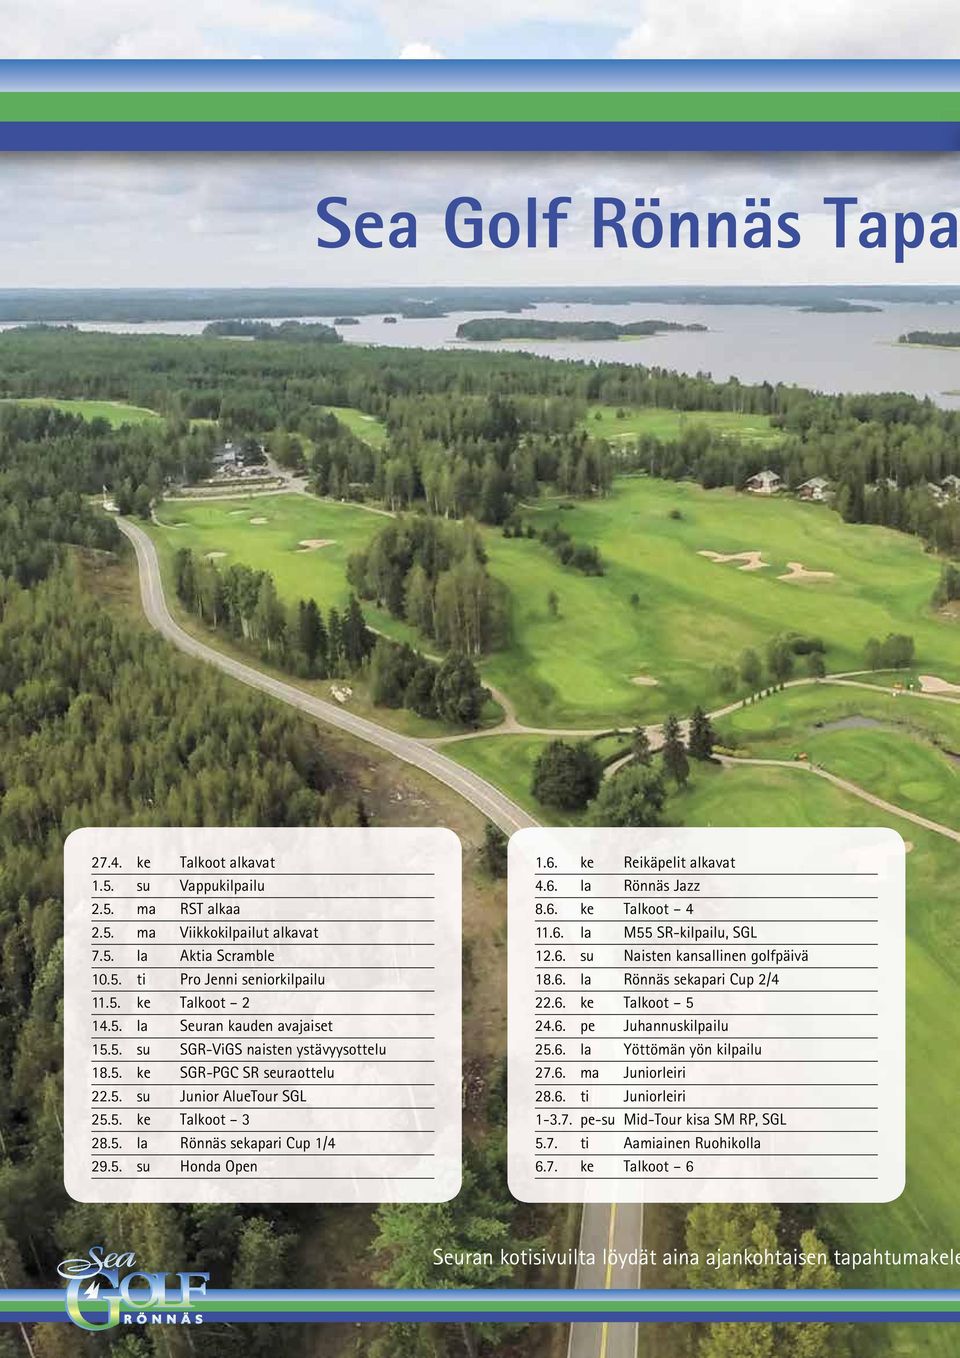 6. la Rönnäs Jazz 8.6. ke Talkoot 4 11.6. la M55 SR-kilpailu, SGL 12.6. su Naisten kansallinen golfpäivä 18.6. la Rönnäs sekapari Cup 2/4 22.6. ke Talkoot 5 24.6. pe Juhannuskilpailu 25.6. la Yöttömän yön kilpailu 27.